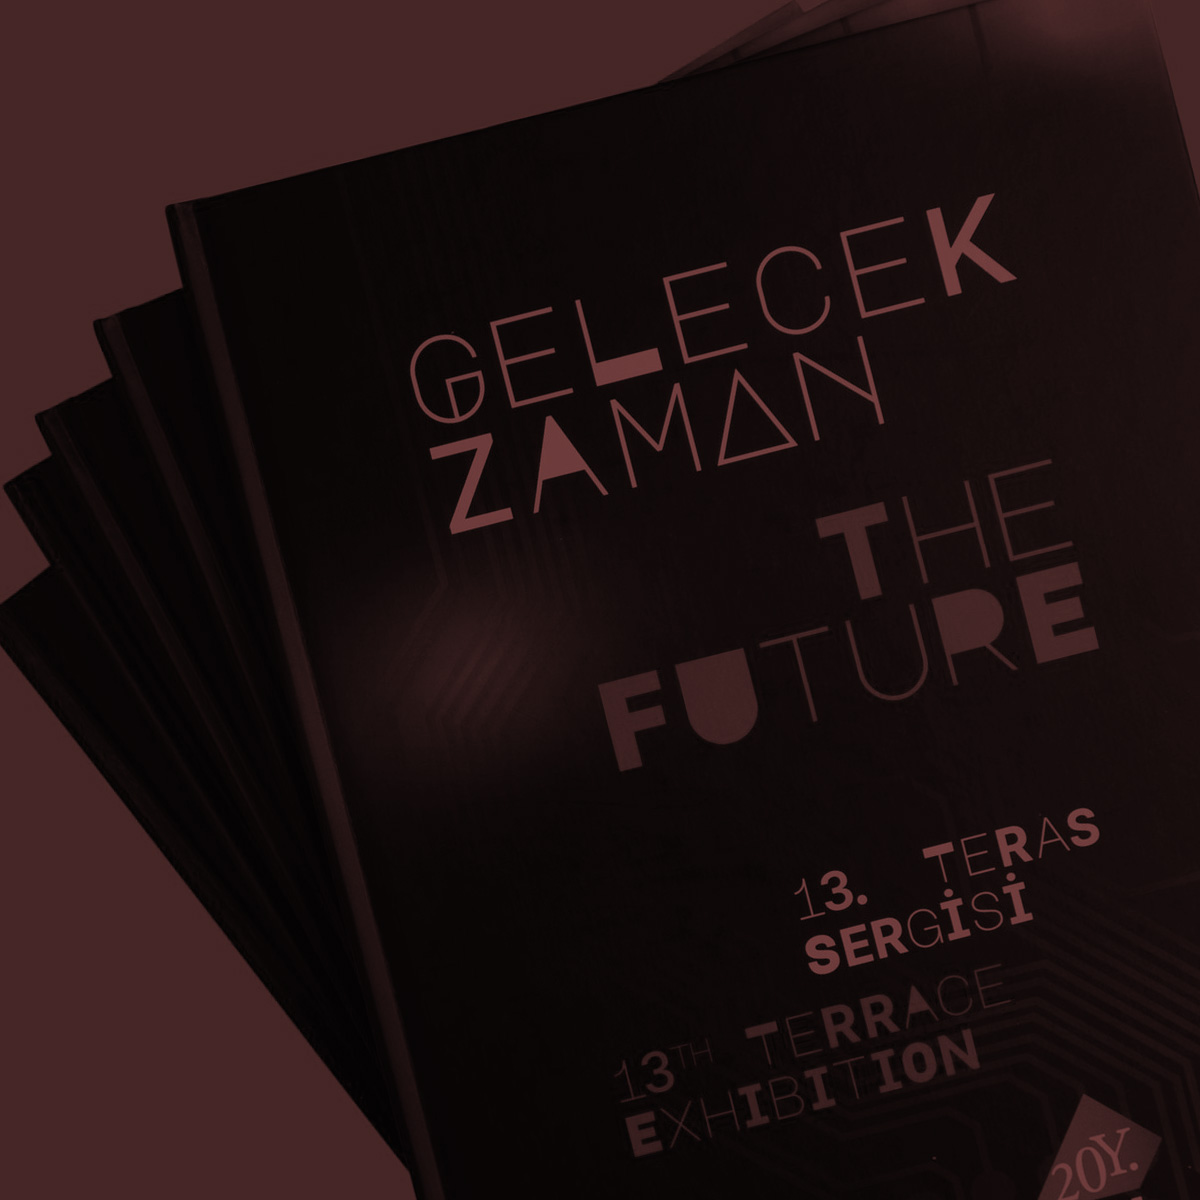 The Future: 13th Terrace Exhibition Book